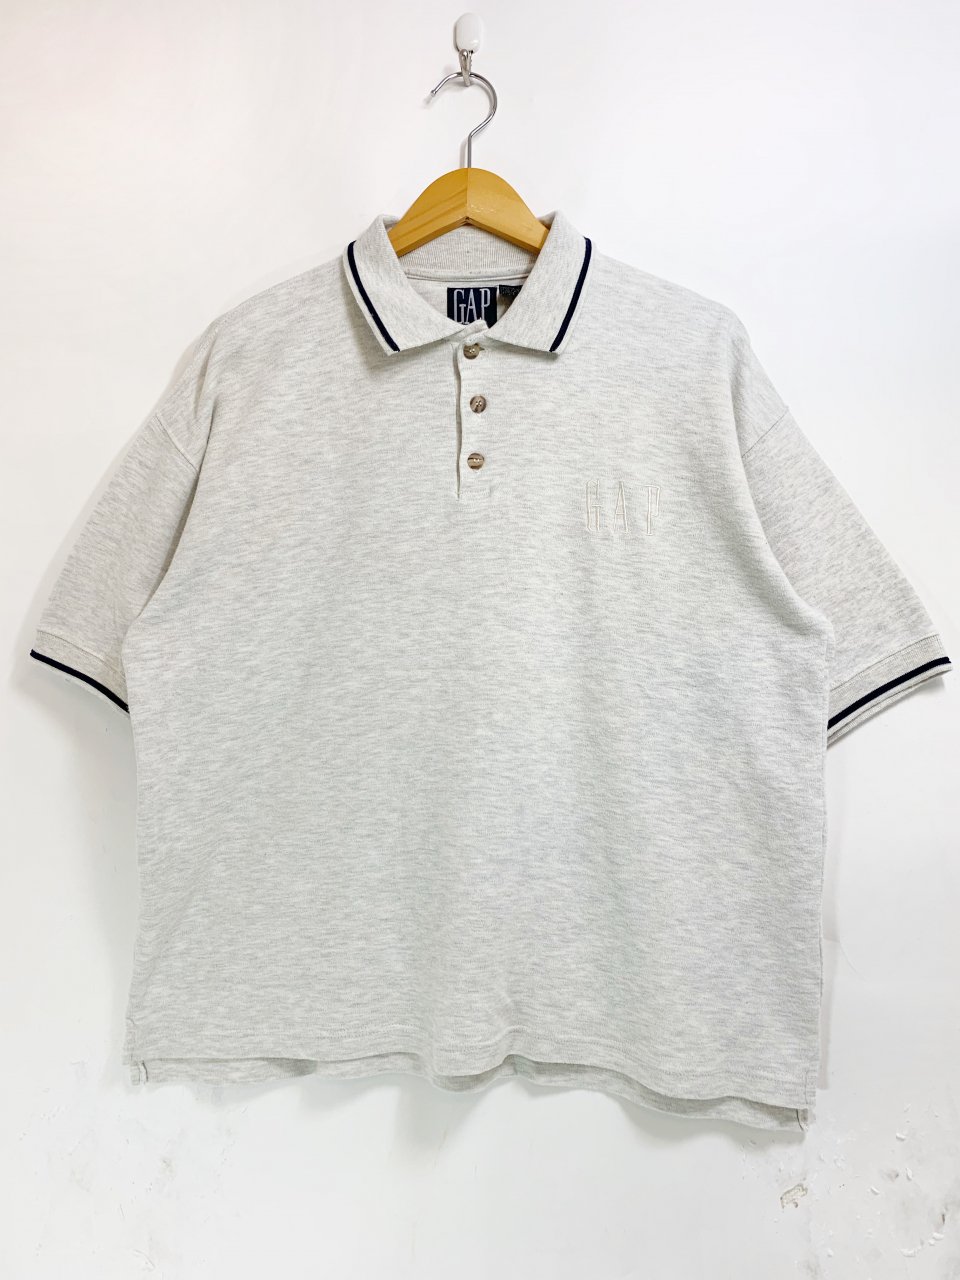 90s OLD GAP Cotton Logo S/S Polo Shirt 灰 L オールドギャップ 半袖 